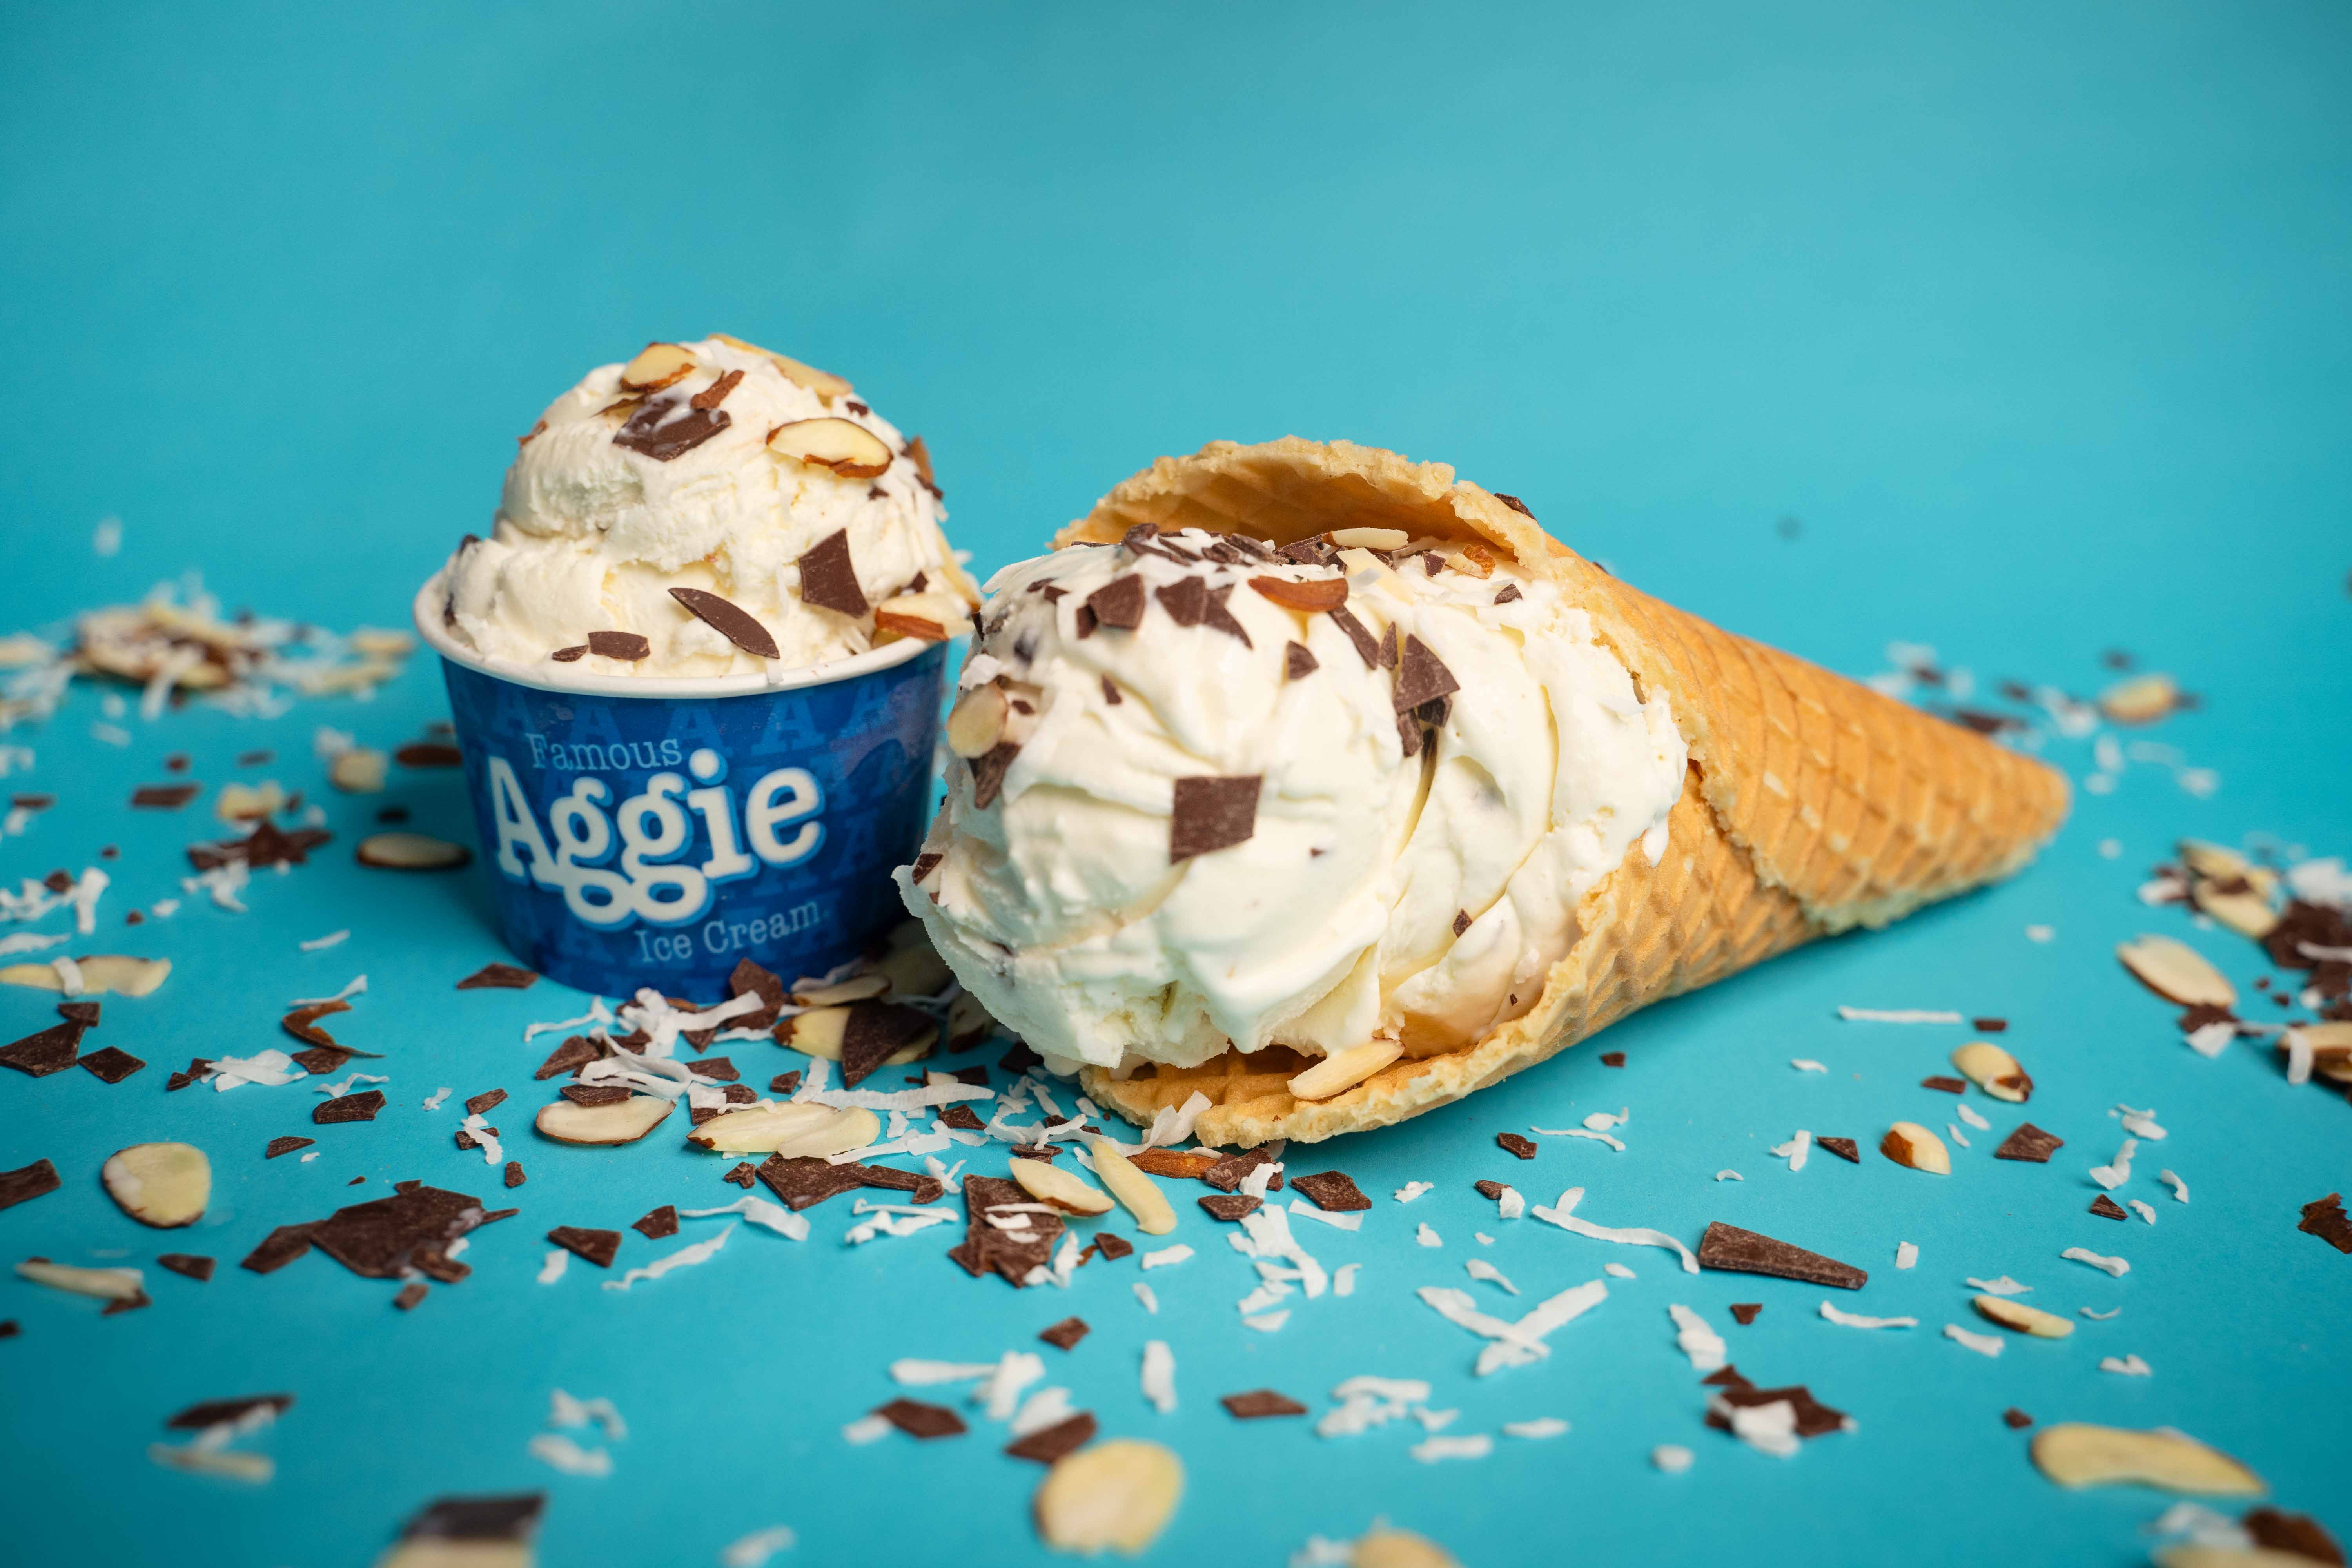 Aggie Joy Ice Cream